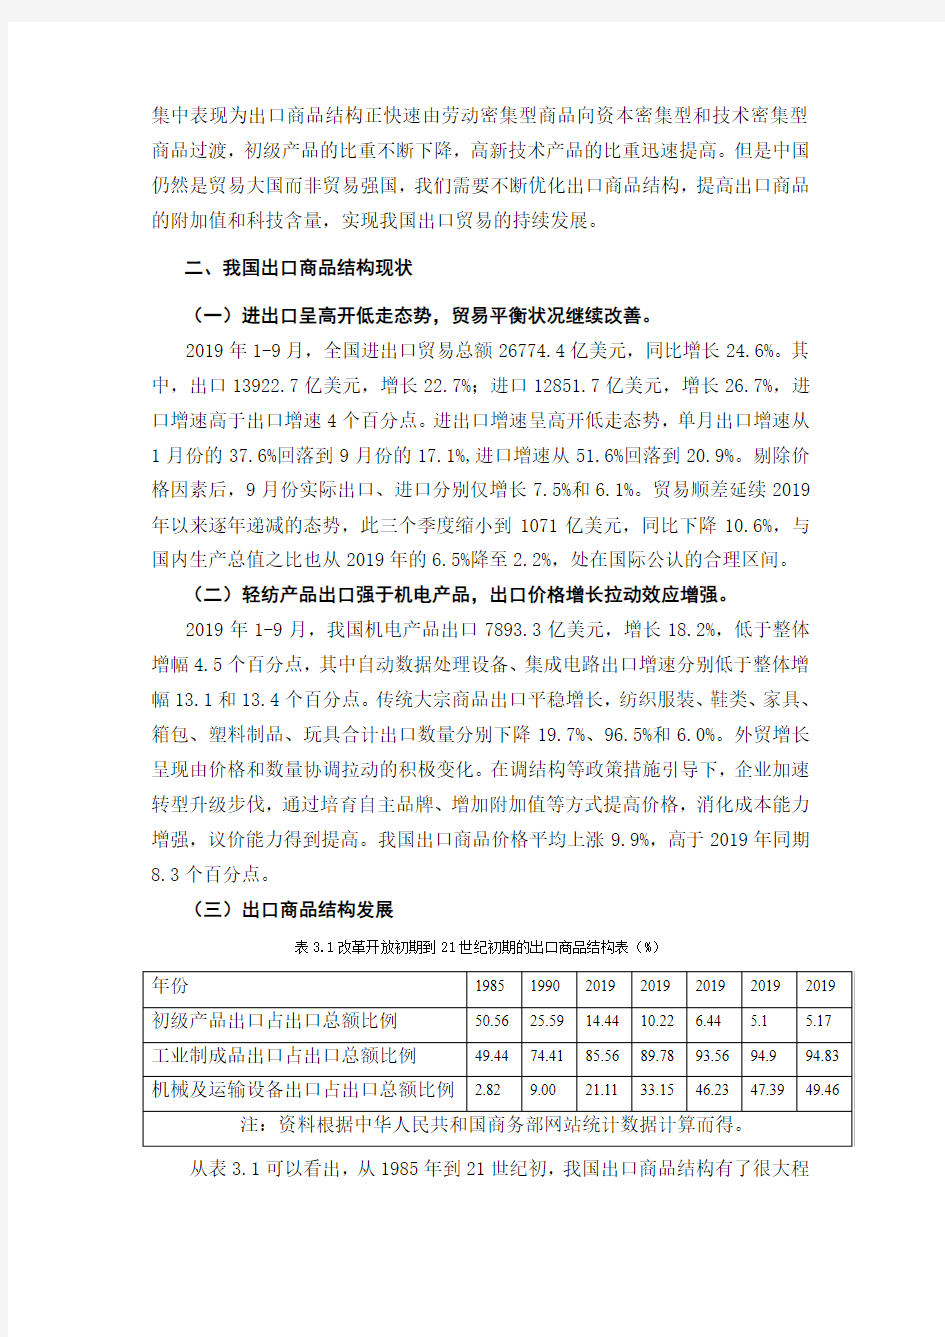 中国出口商品结构分析与对策~剖析-共9页